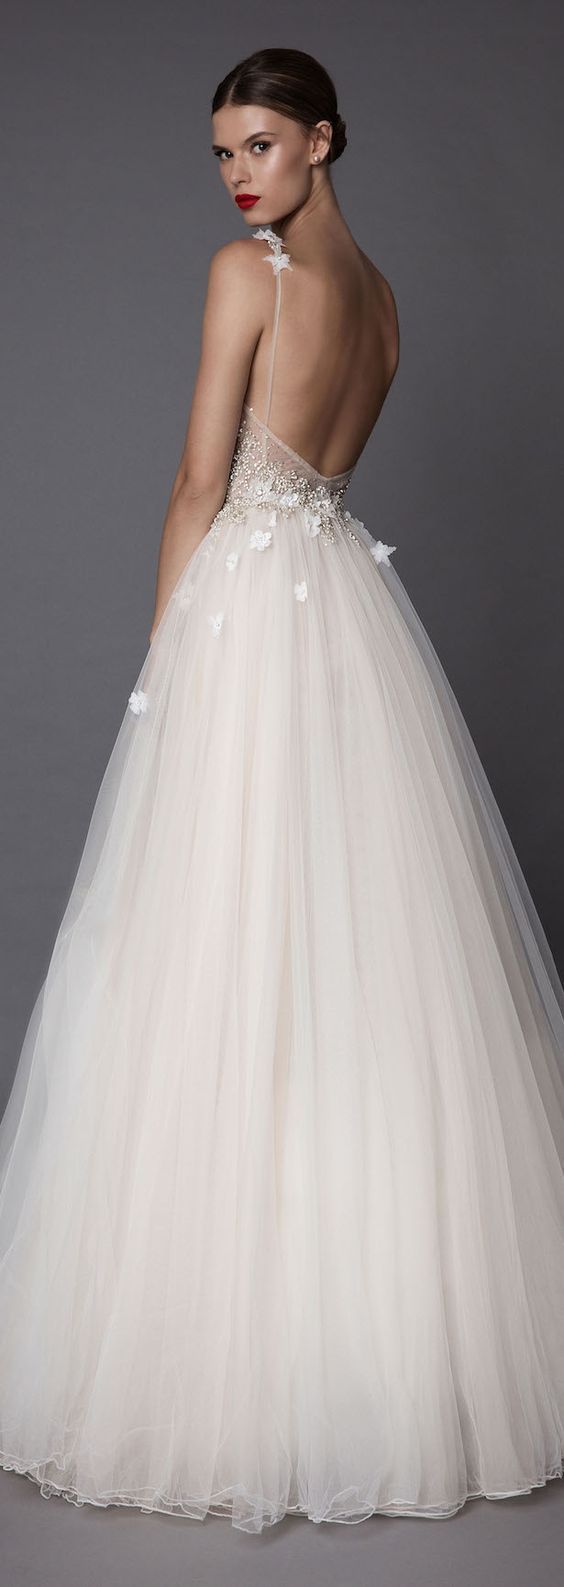 Свадьба - Berta Wedding Dress Inspiration